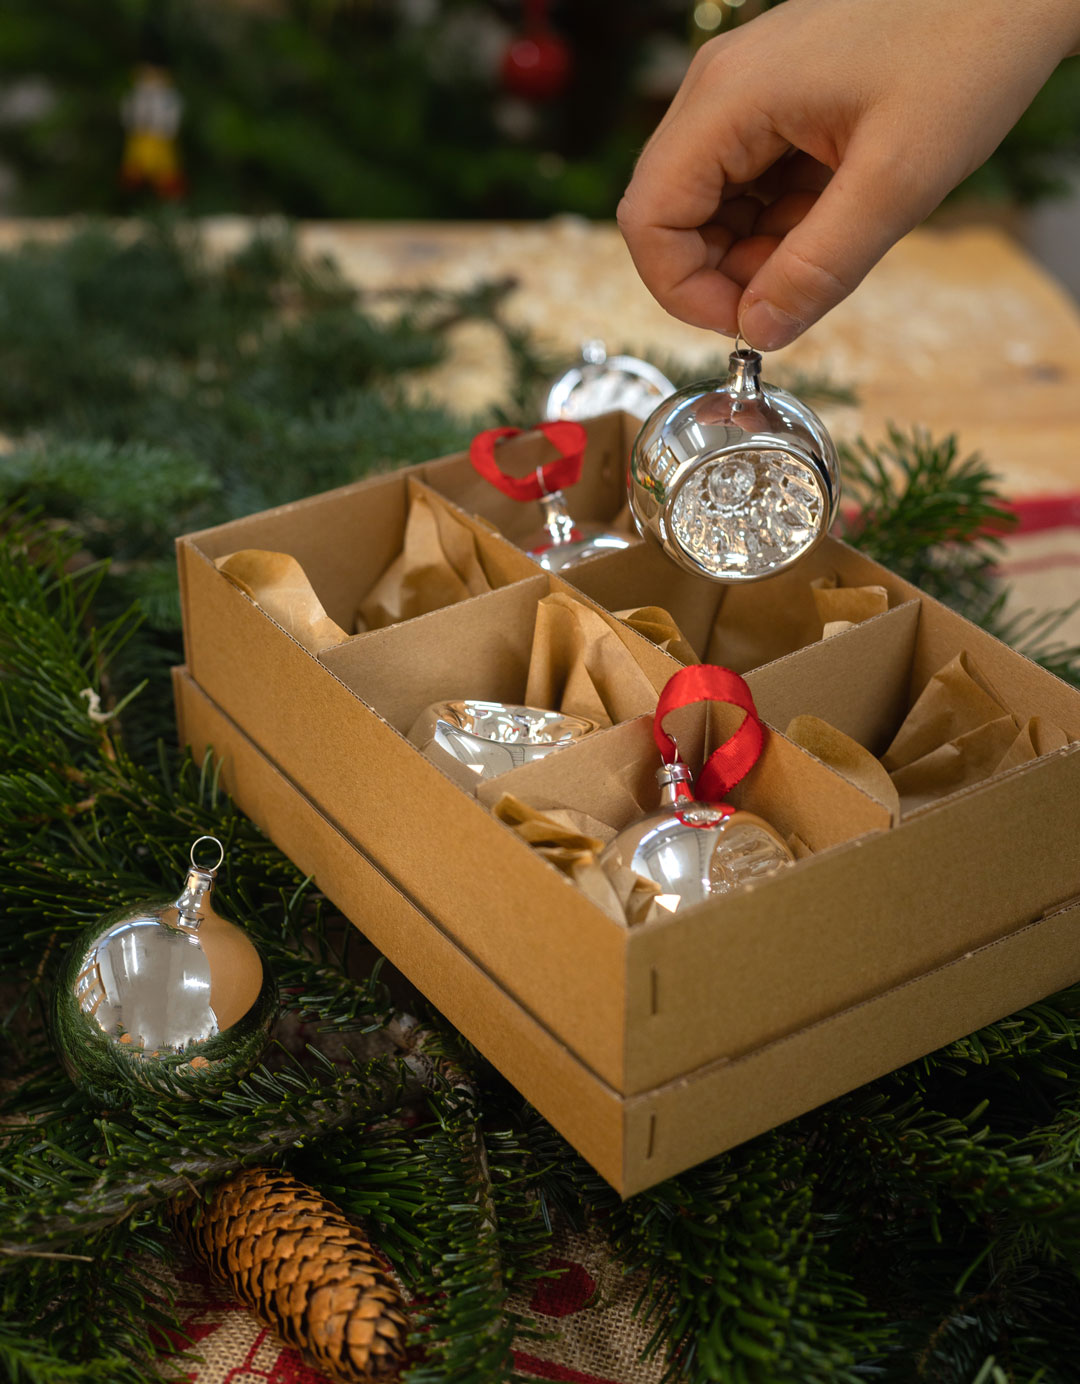 Hand tar upp en julgranskula i silver ur en kartong